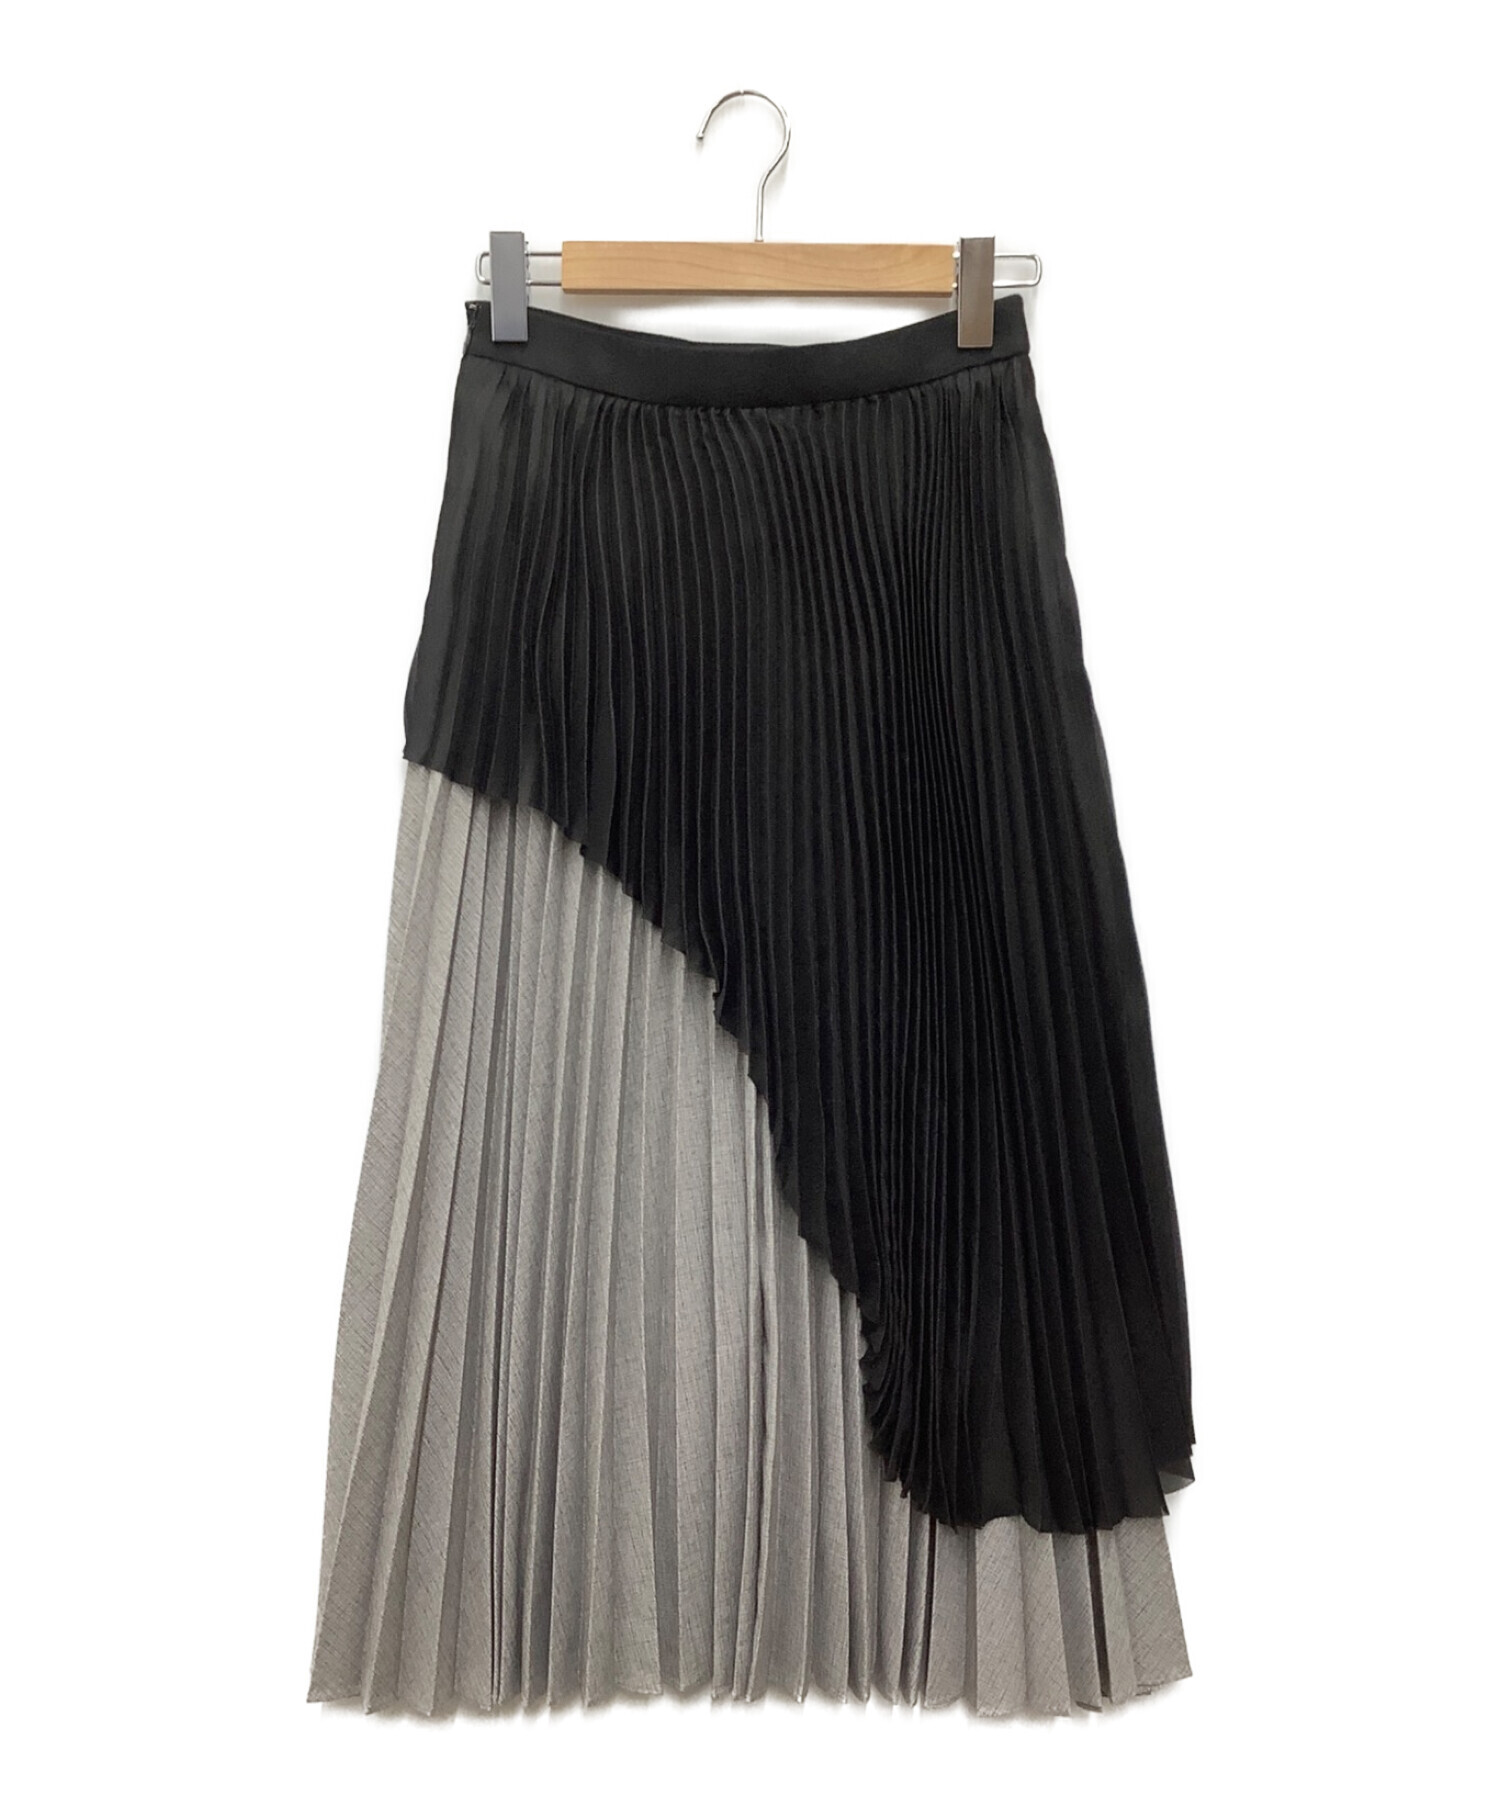 LE CIEL BLEU (ルシェルブルー) プリーツスカート ブラック×グレー サイズ:SIZE 36